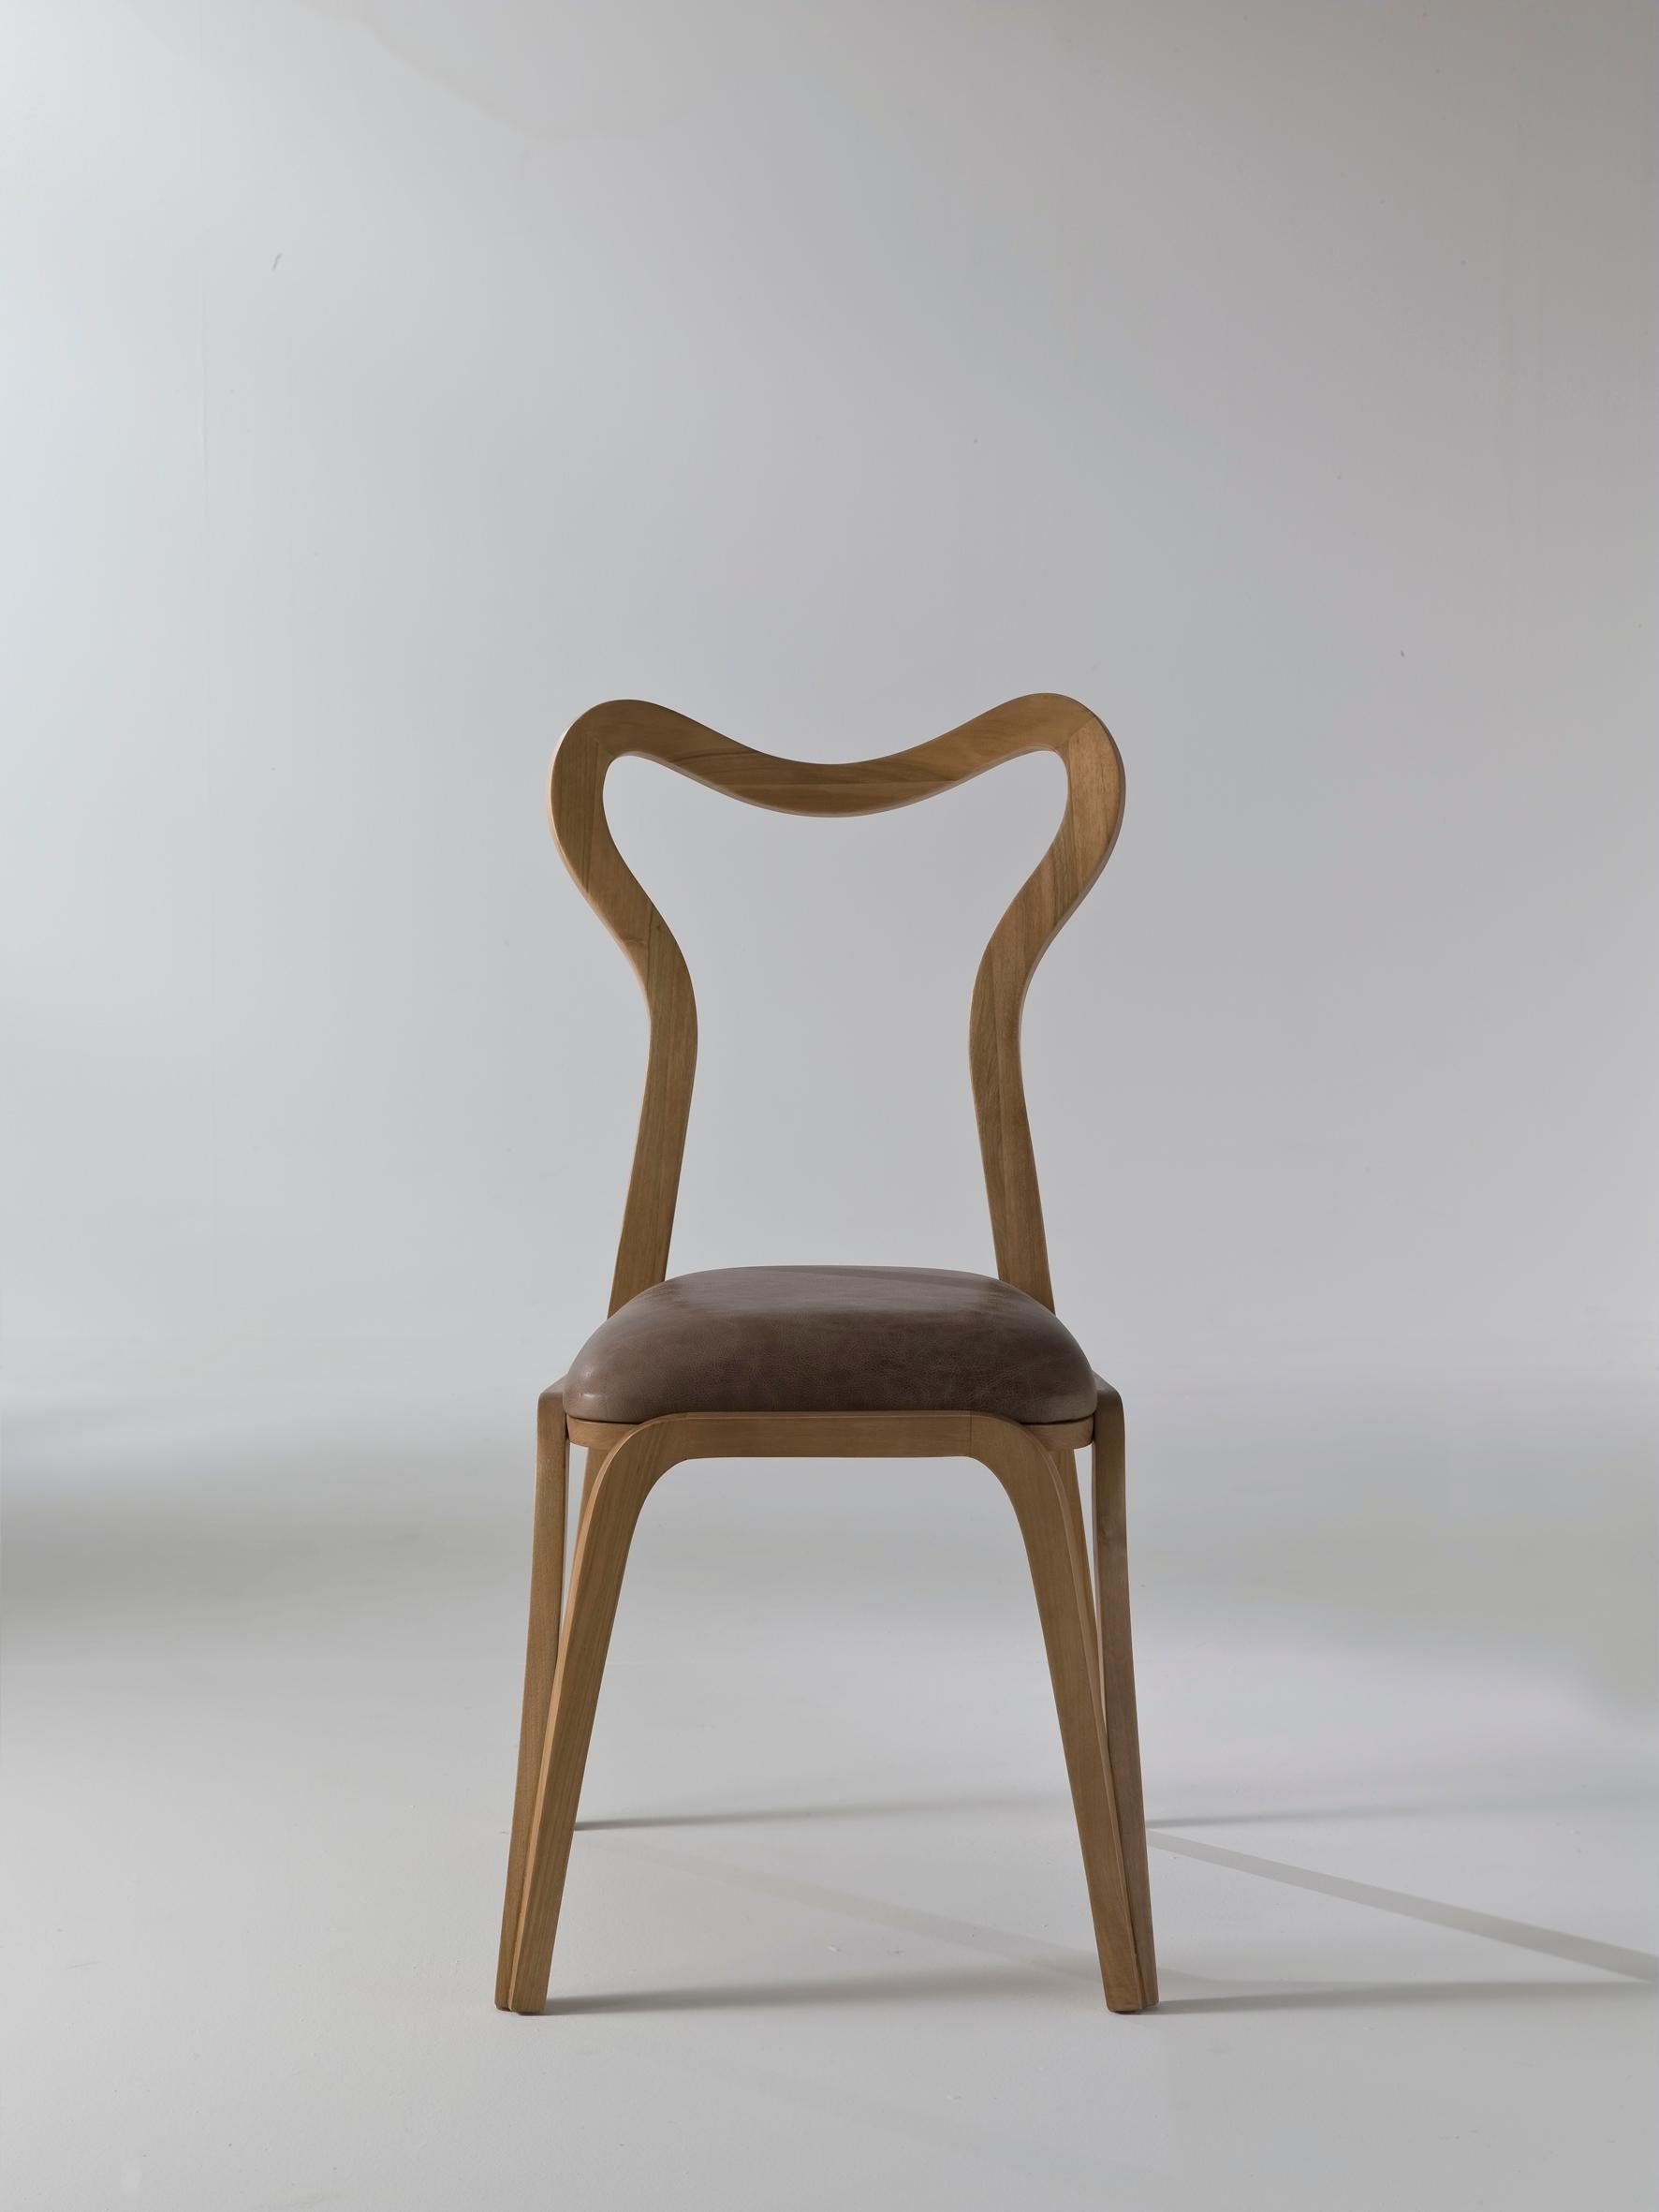 Voici la chaise Daina, un chef-d'œuvre de l'artisanat italien conçu par Nigel Coates, qui s'inspire de la souplesse du daim et de la grâce du corps féminin pour créer une chaise qui respire l'élégance et la légèreté.

Fabriquée en bois de noyer